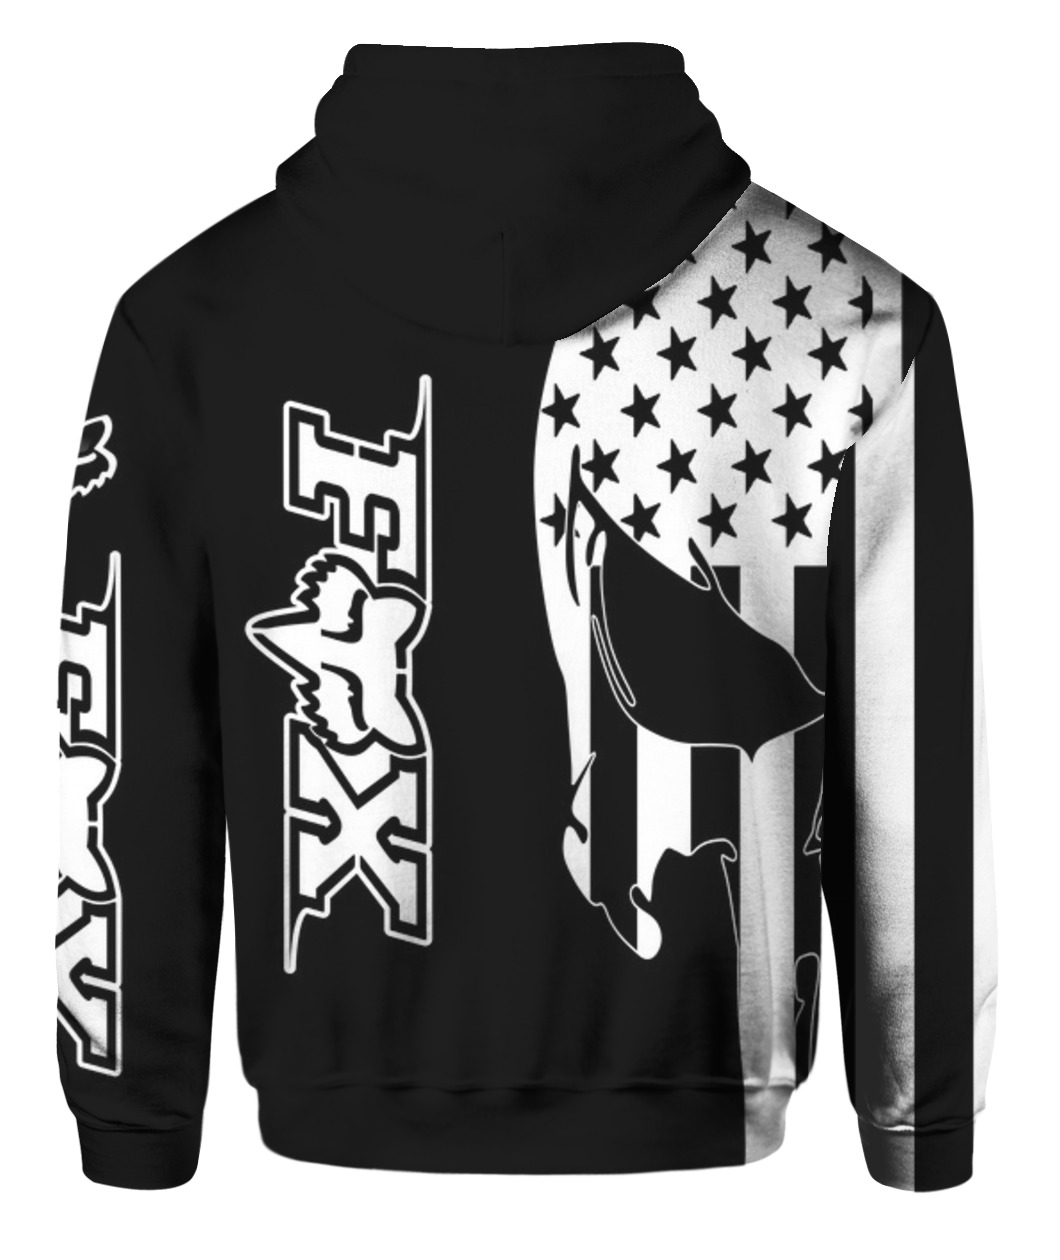 American flag skull fox racing full printing hoodie - back